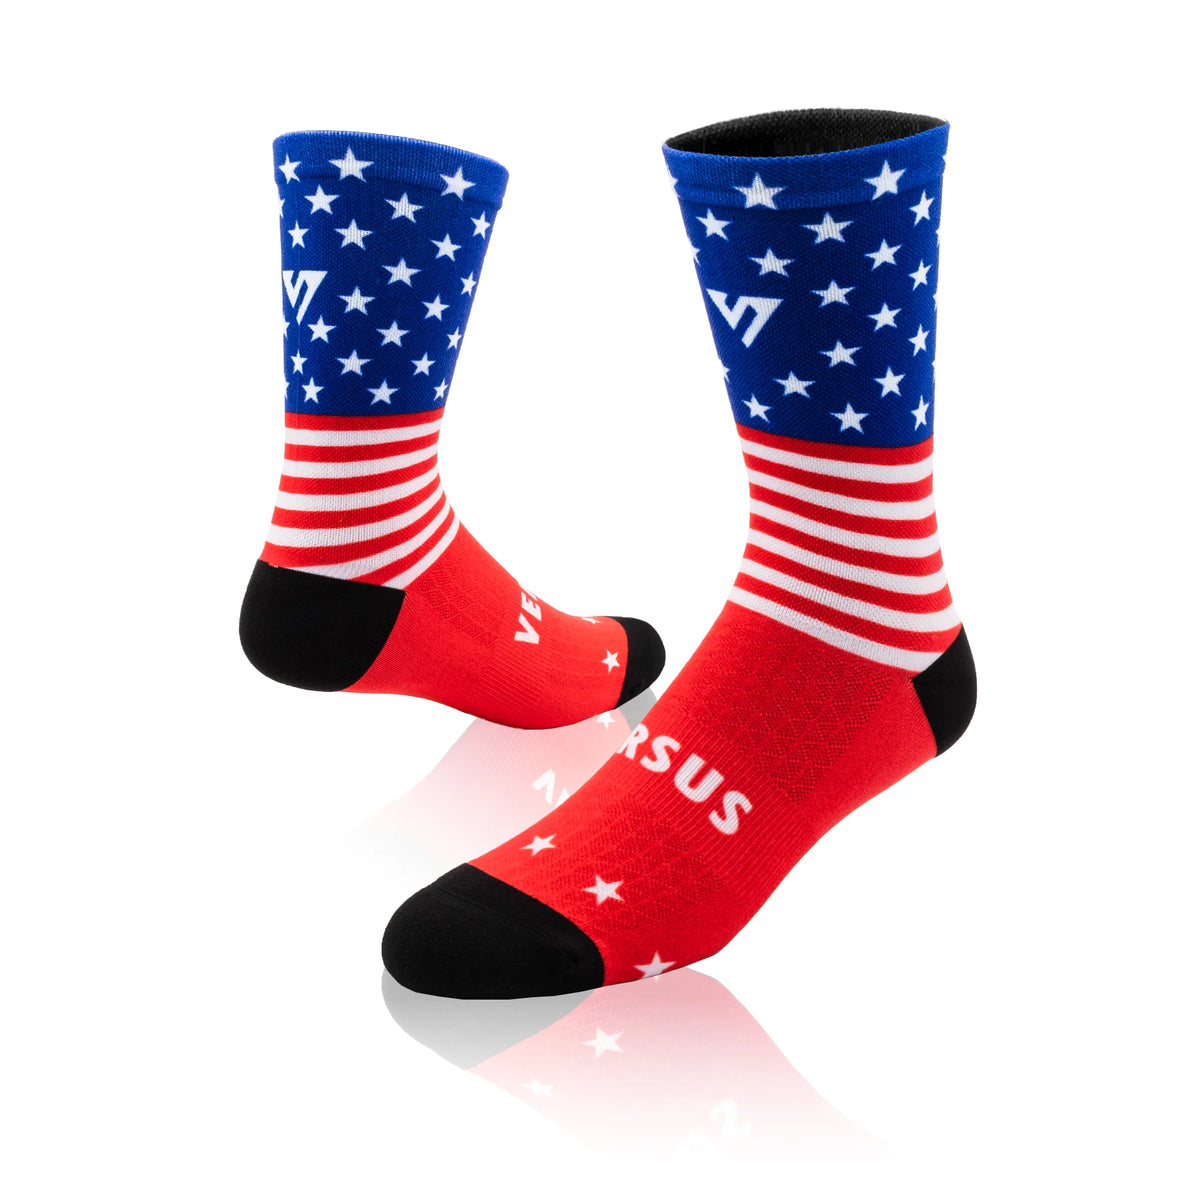 Versus USA Flag Elite Socks